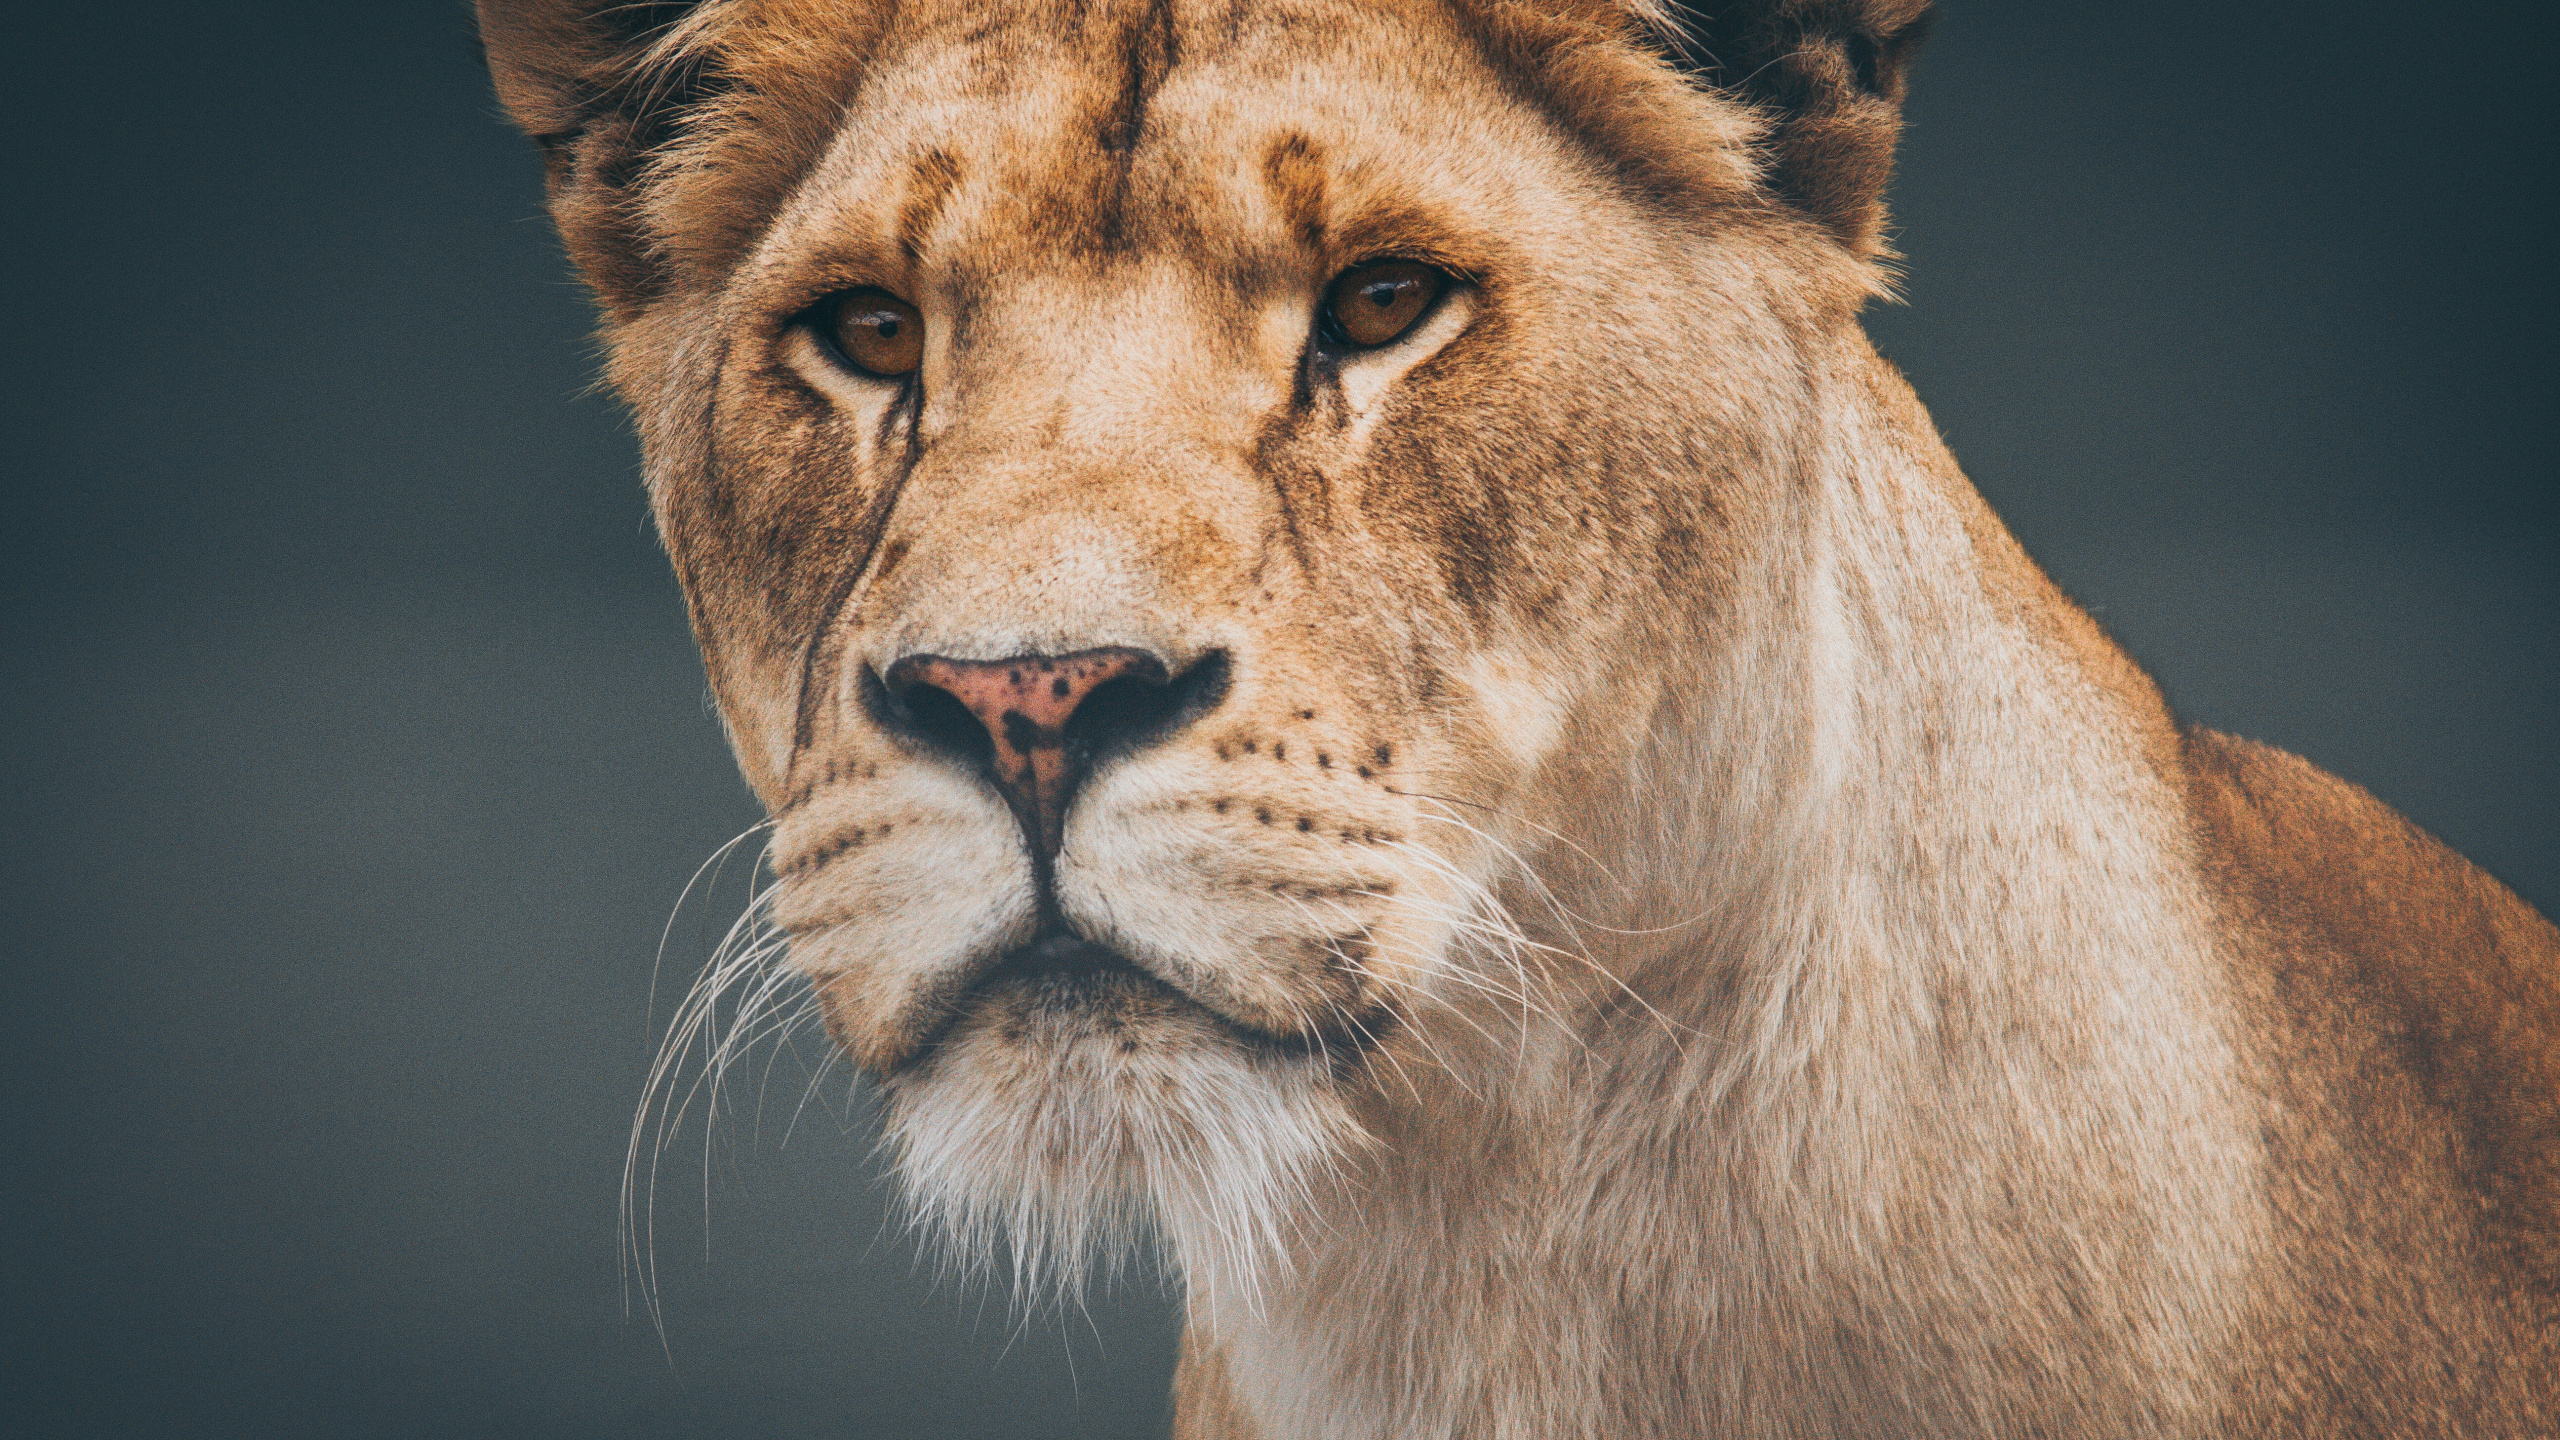 狮子, 野生动物, 陆地动物, 头发, 猫科 壁纸 2560x1440 允许